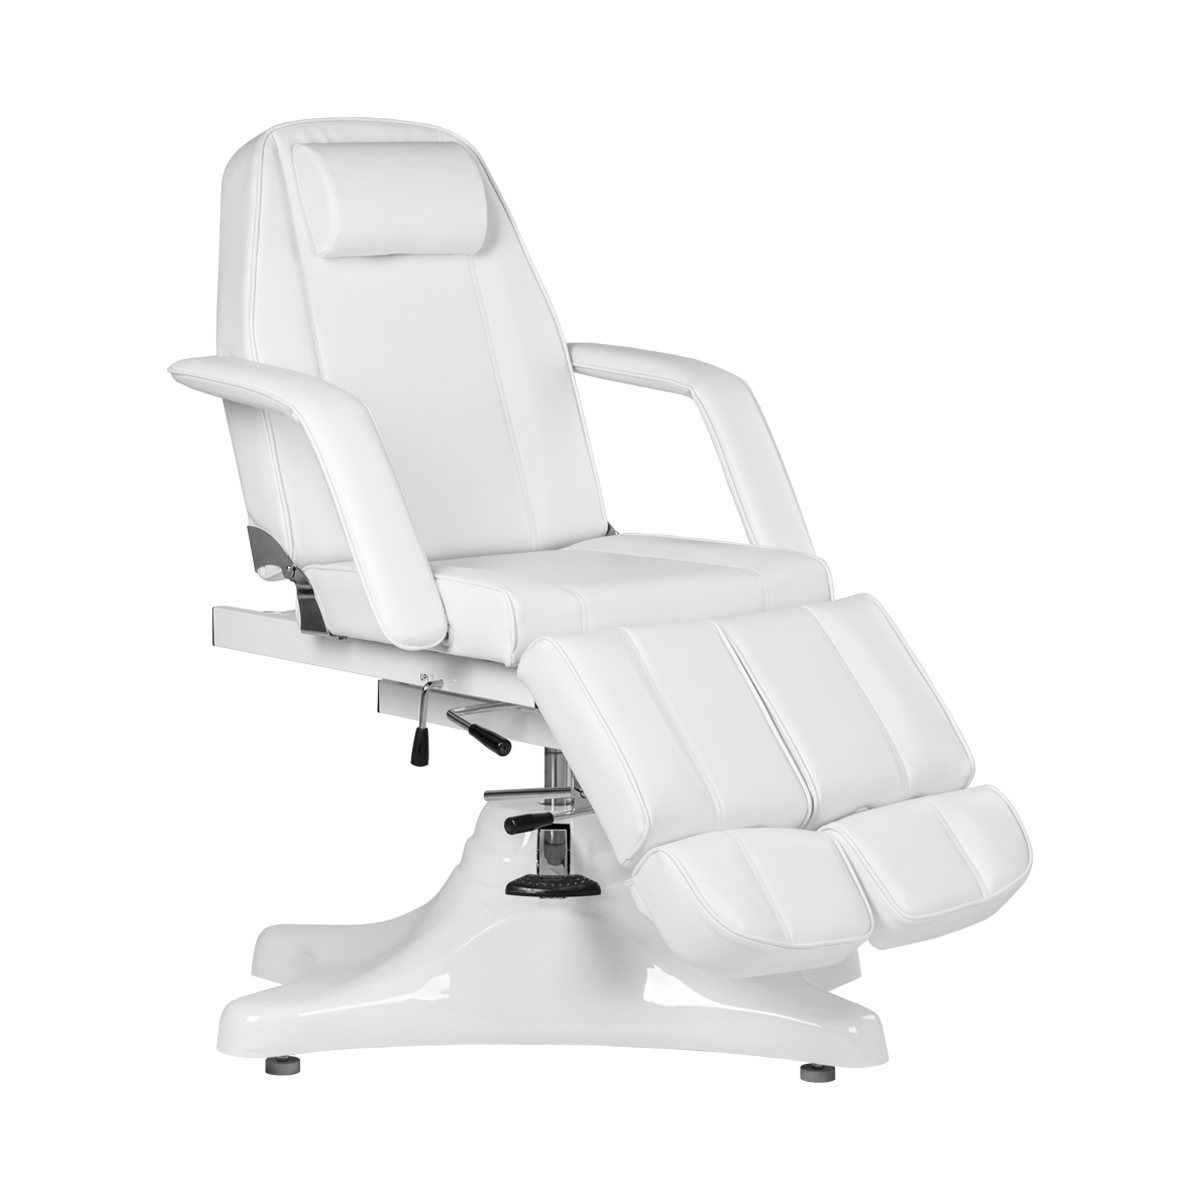 Педикюрное кресло МД-823А, гидравлика - 11 